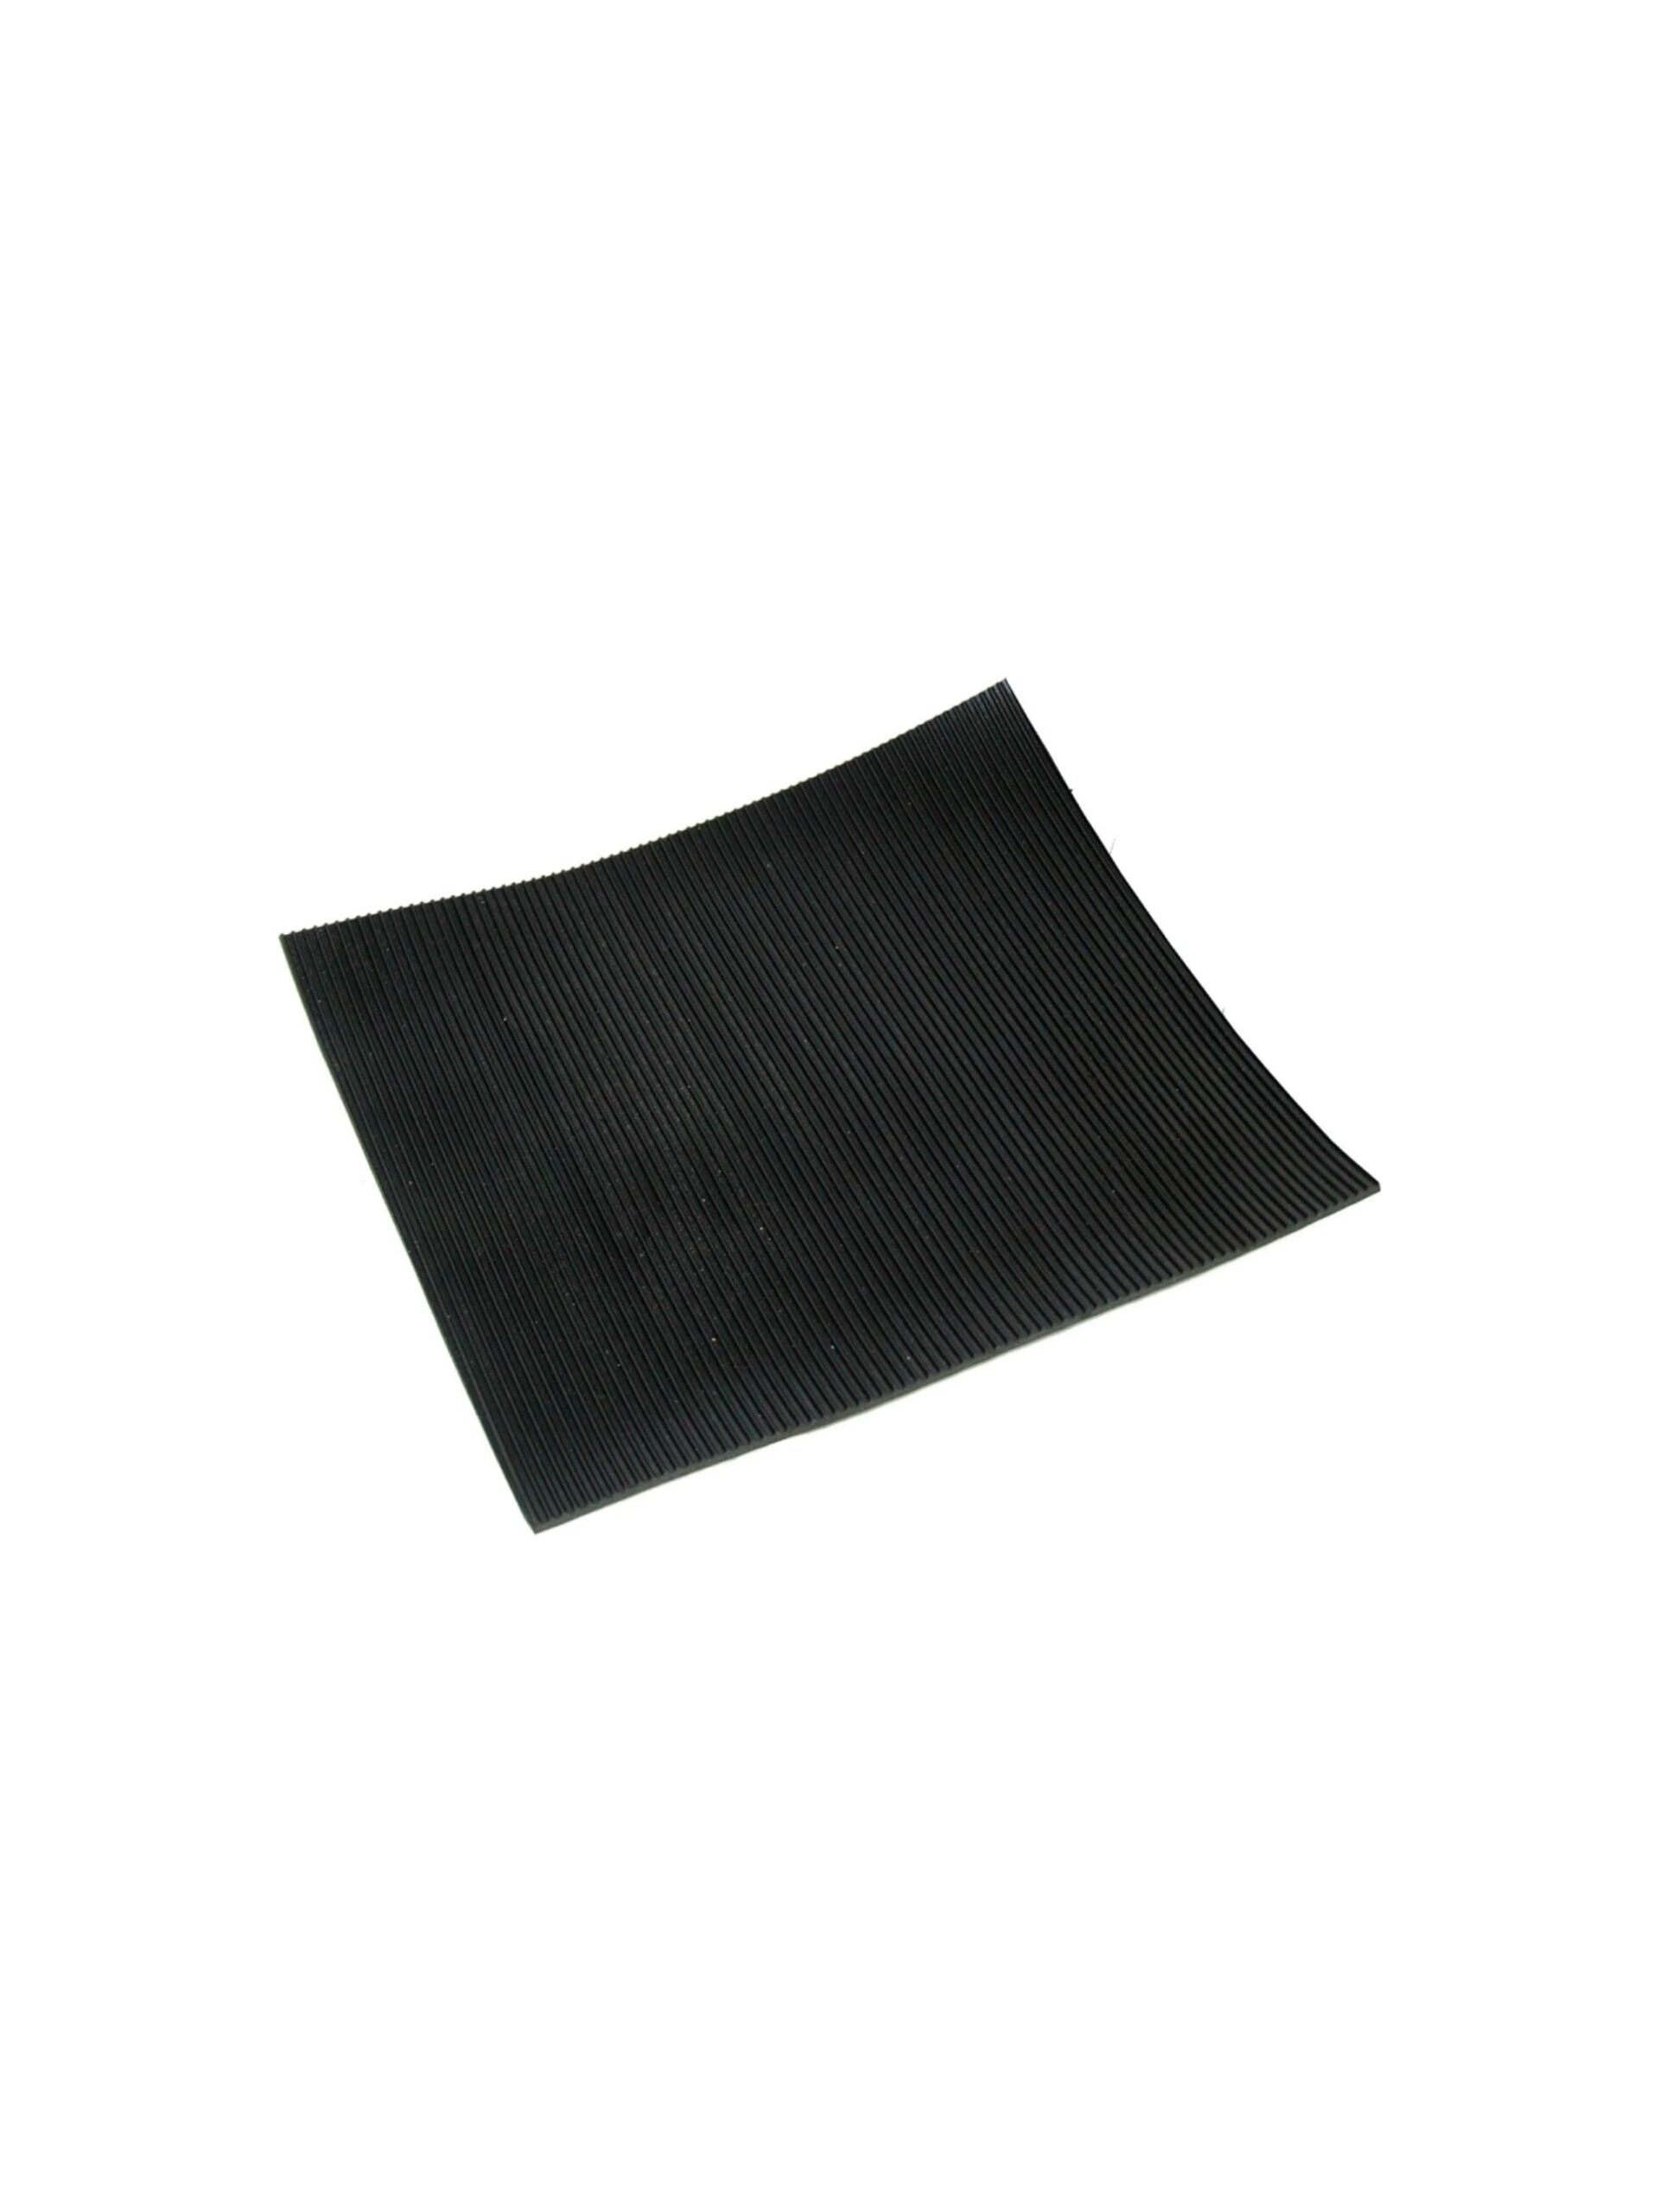 Covor Cu Striuri Fine si o insertie textila 4 mm rola 10 m × 1.4 m sanito.ro